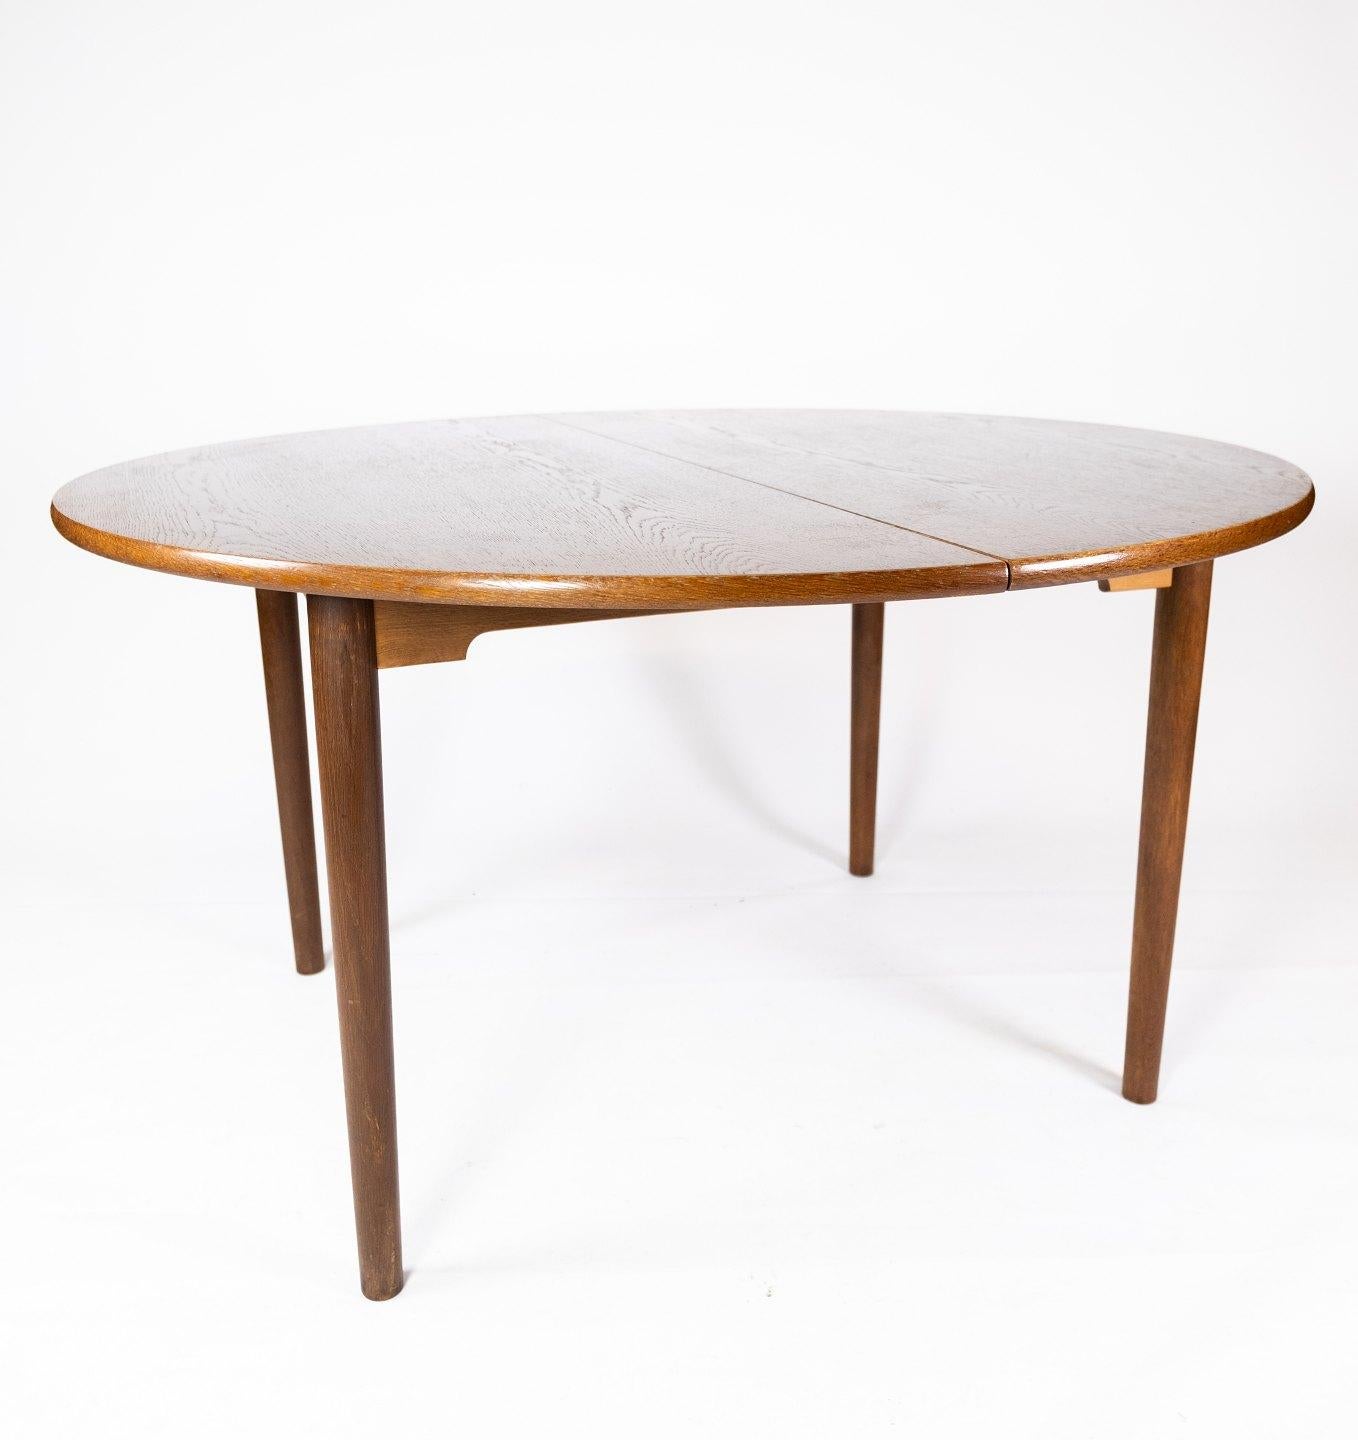 Cette table de salle à manger de conception danoise datant des années 1960 dégage un attrait intemporel avec sa silhouette élégante et sa riche finition en chêne foncé. Fabriqué avec une attention méticuleuse aux détails, il illustre la quintessence